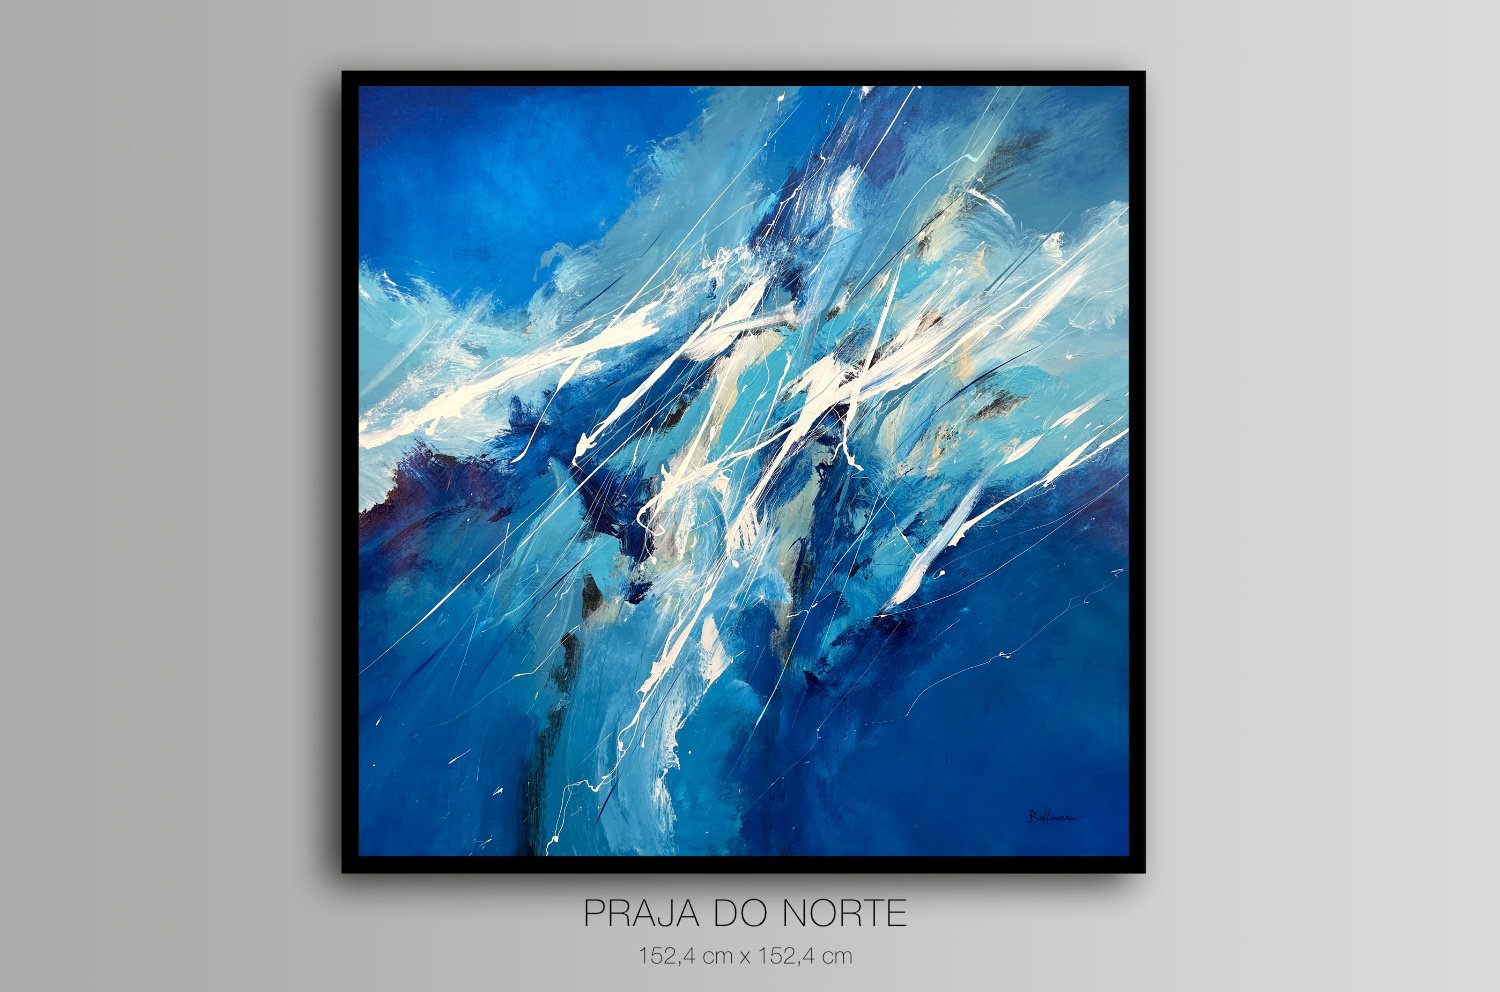 Praja do Norte - Featured